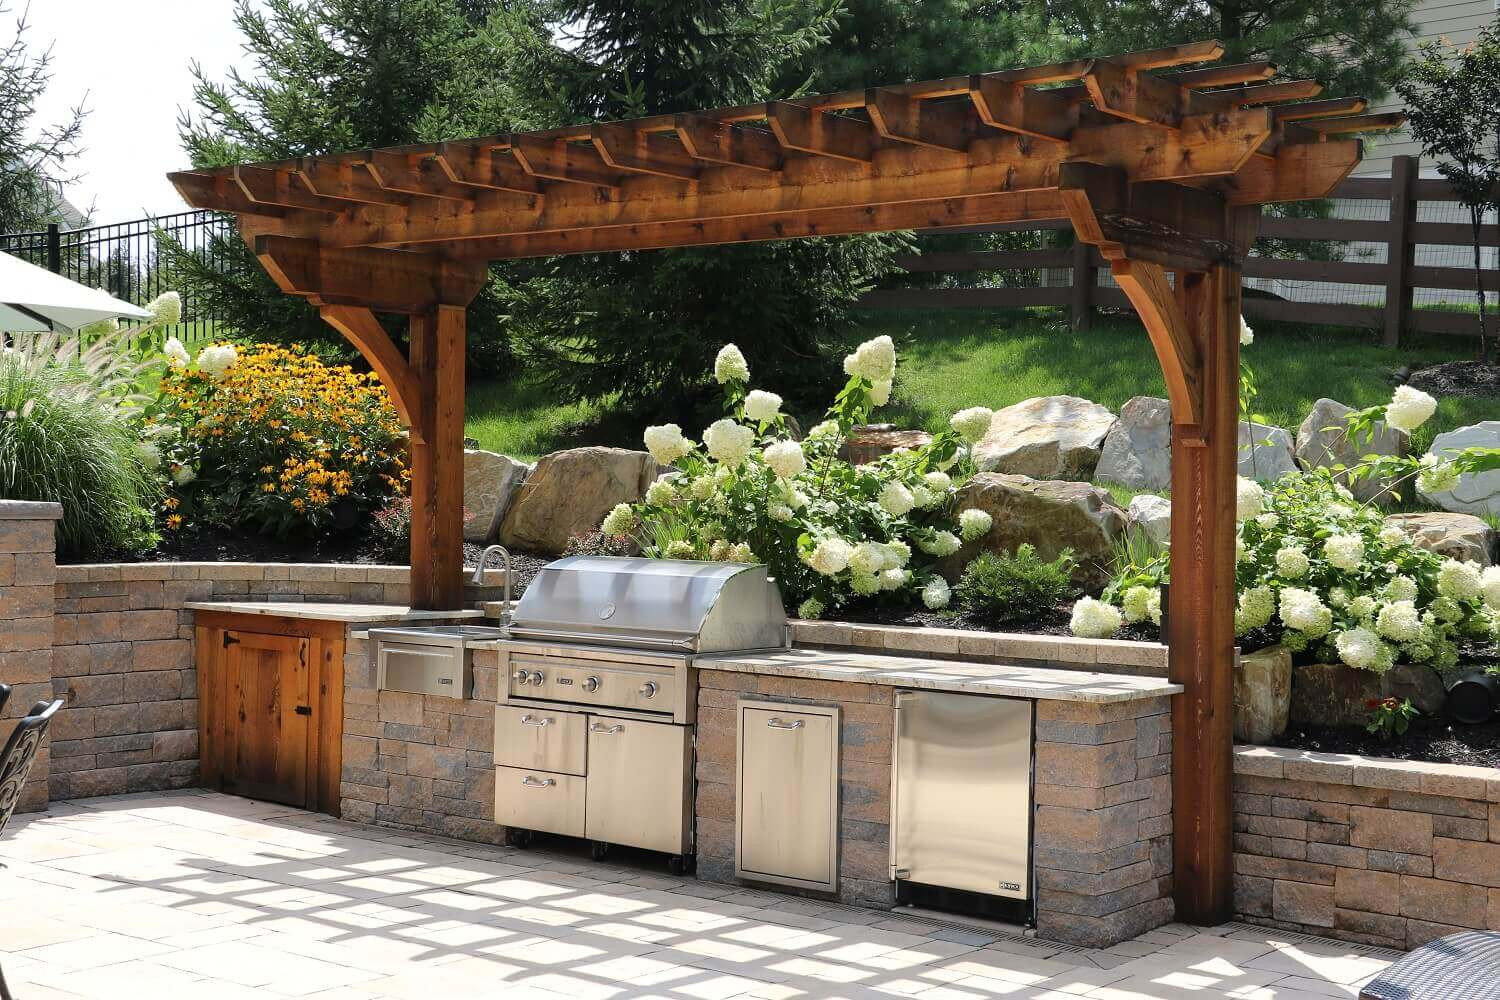 Grill For Outdoor Kitchen
 Custom Built Outdoor Kitchens & Grills Burkholder Landscape